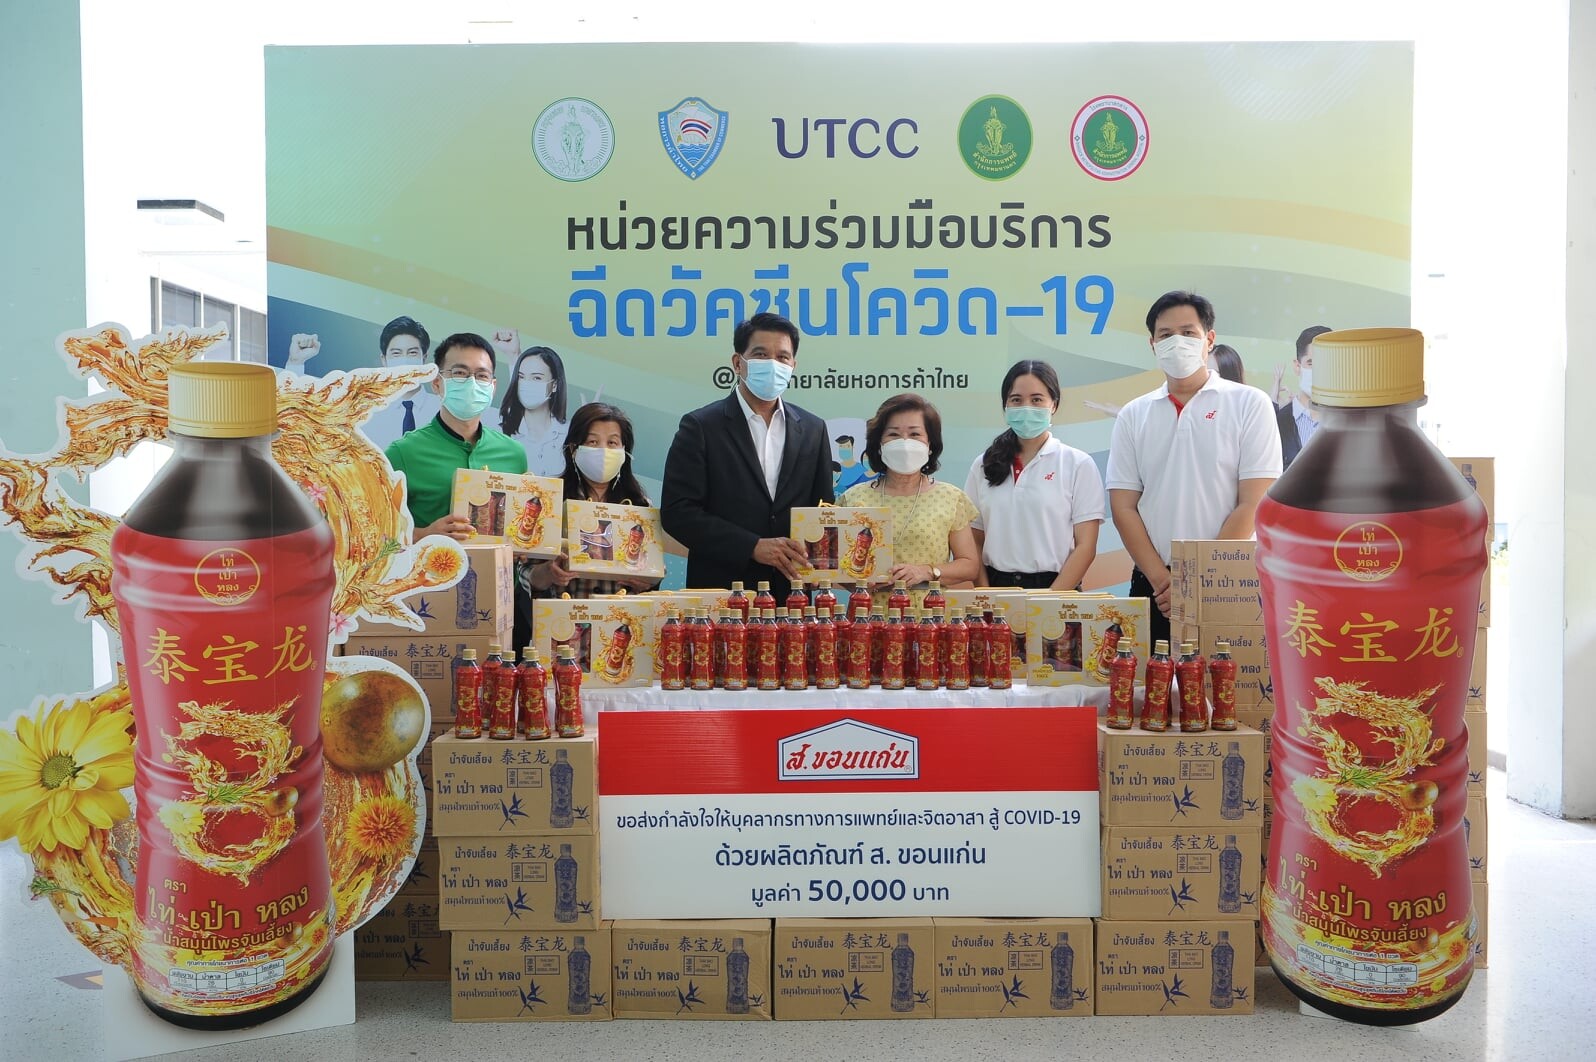 ม.หอการค้าไทย รับมอบสิ่งของบริจาคแก่ศูนย์ฉีดวัคซีนนอกโรงพยบาล